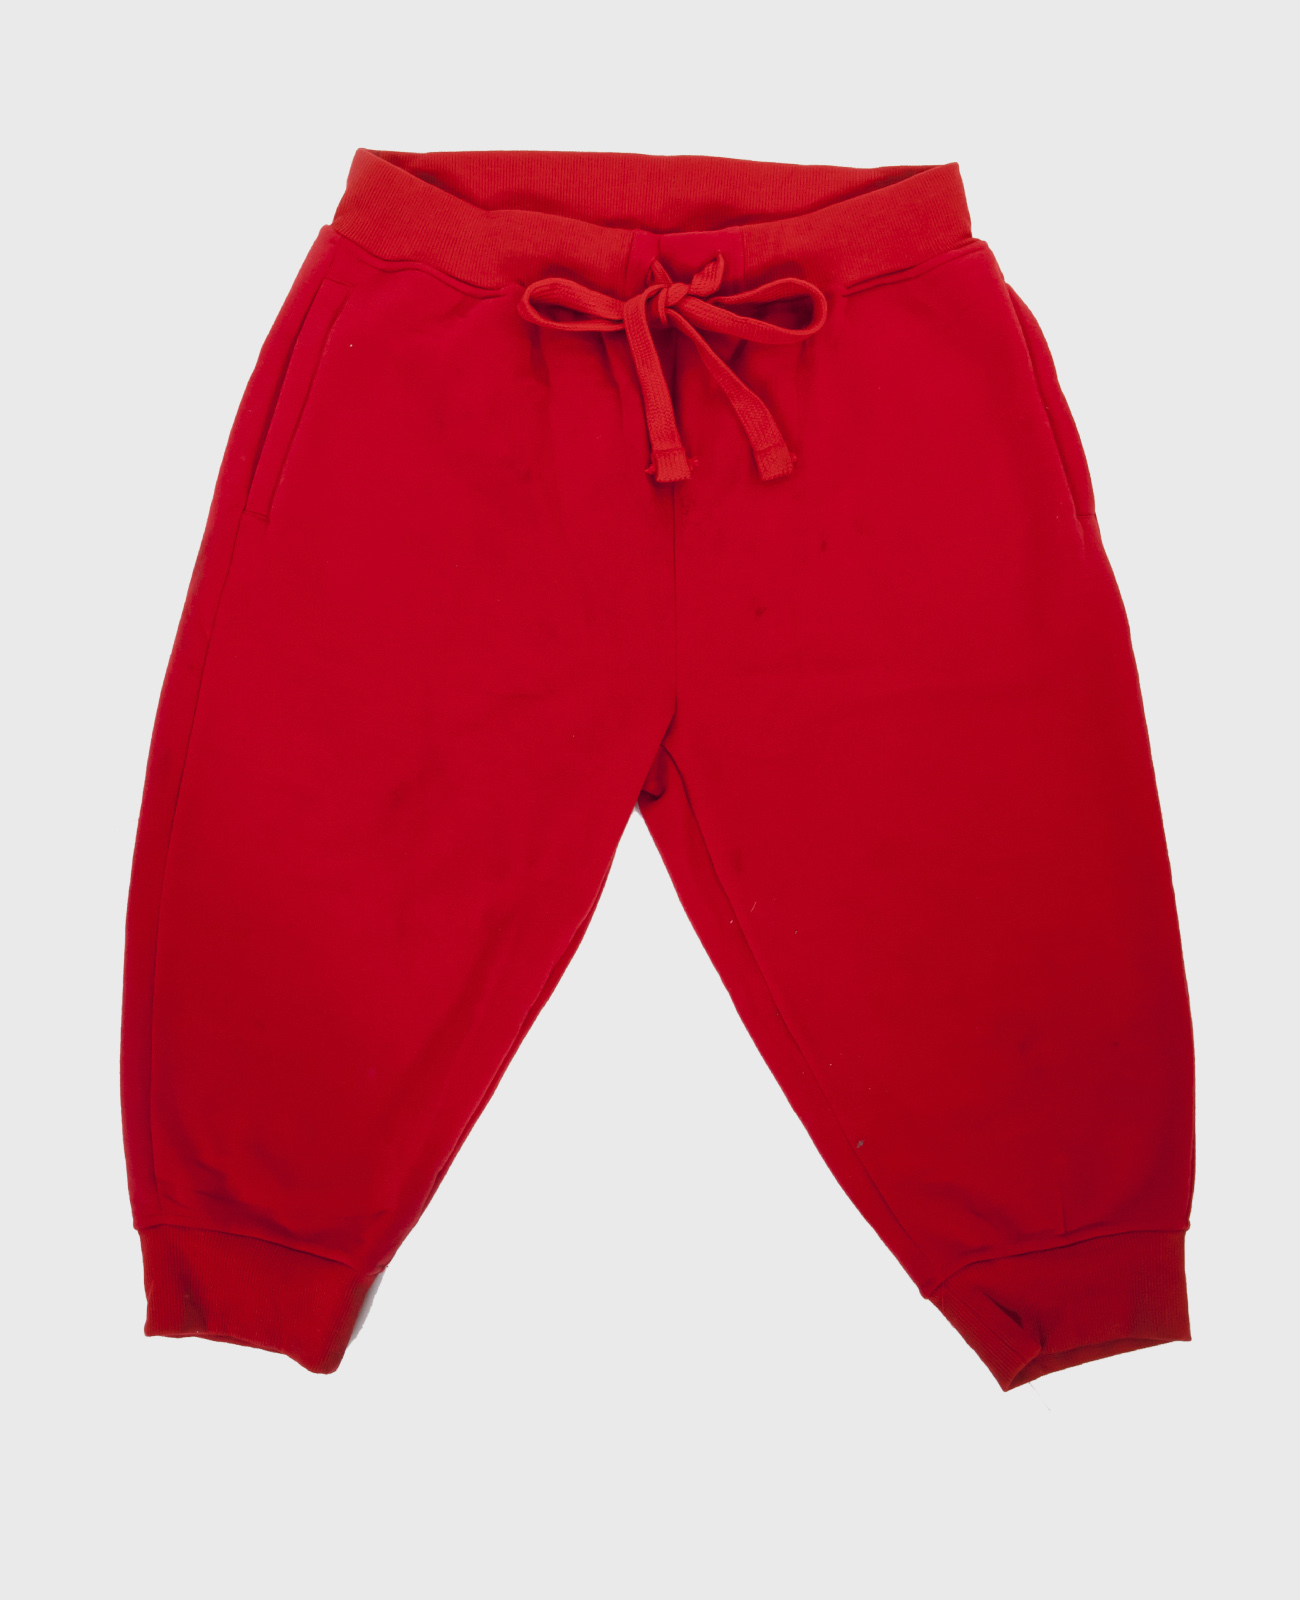 Мужские красные бриджи с карманами: оптом и в розницу